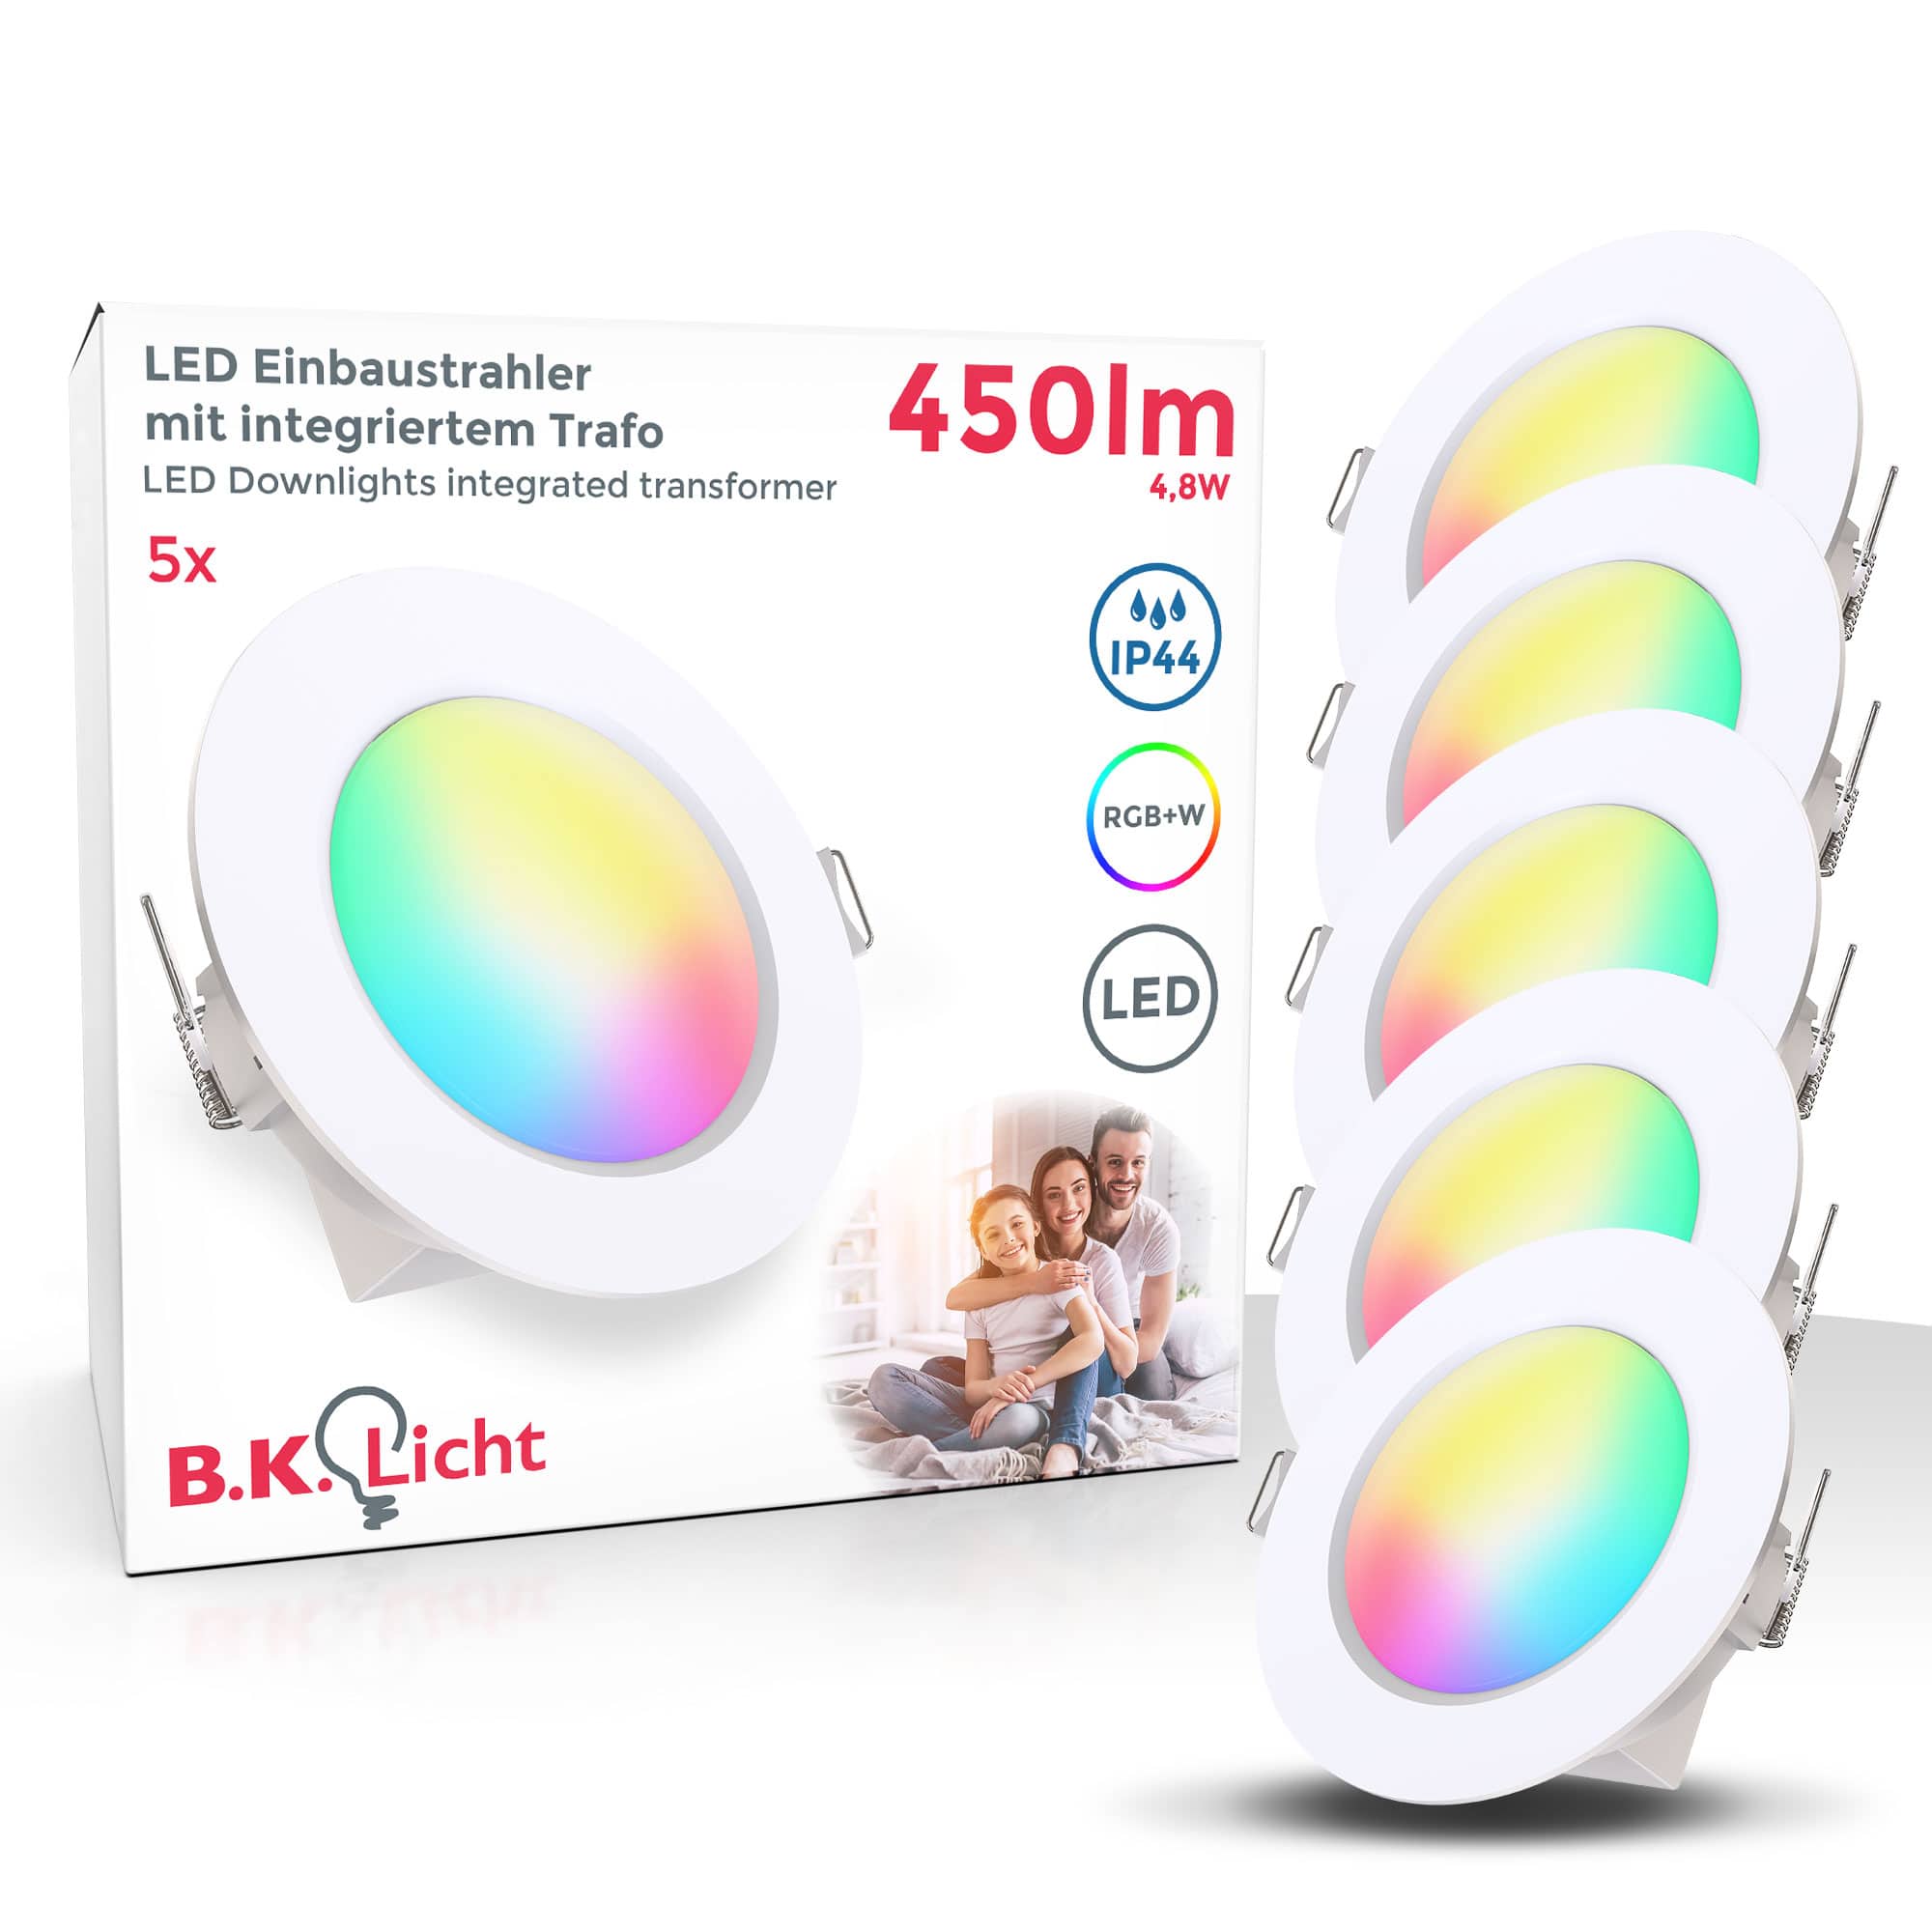 B.K.Licht Onlineshop | LED Leuchten & Lampen günstig kaufen